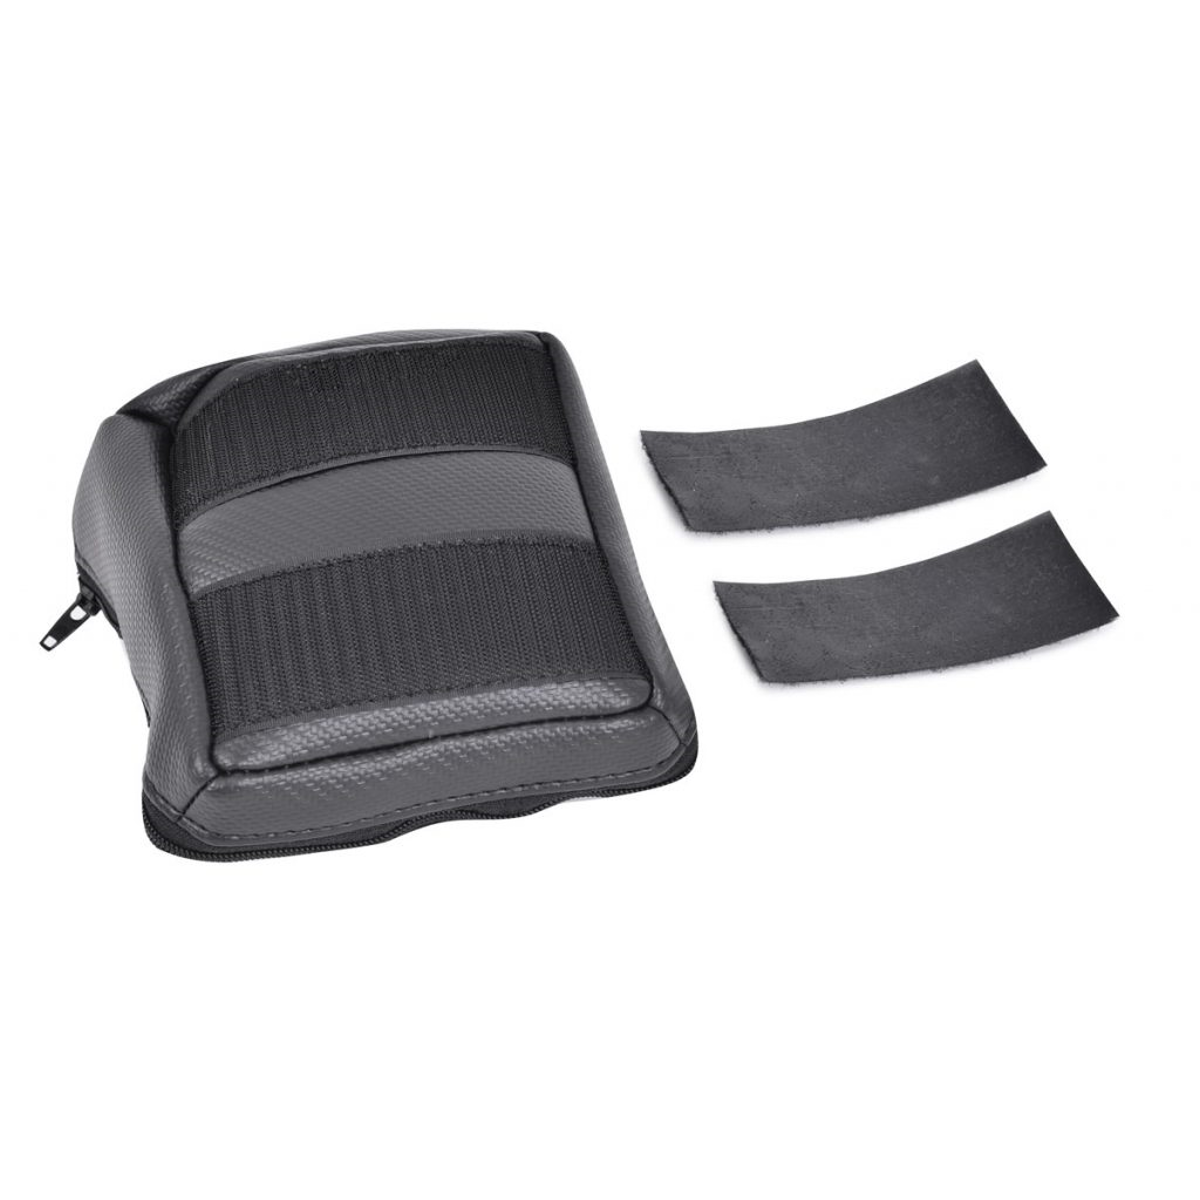 Can-Am Maverick X3 Under Seat Bag and Can-Am X3 Dash Bag - BUNDLE